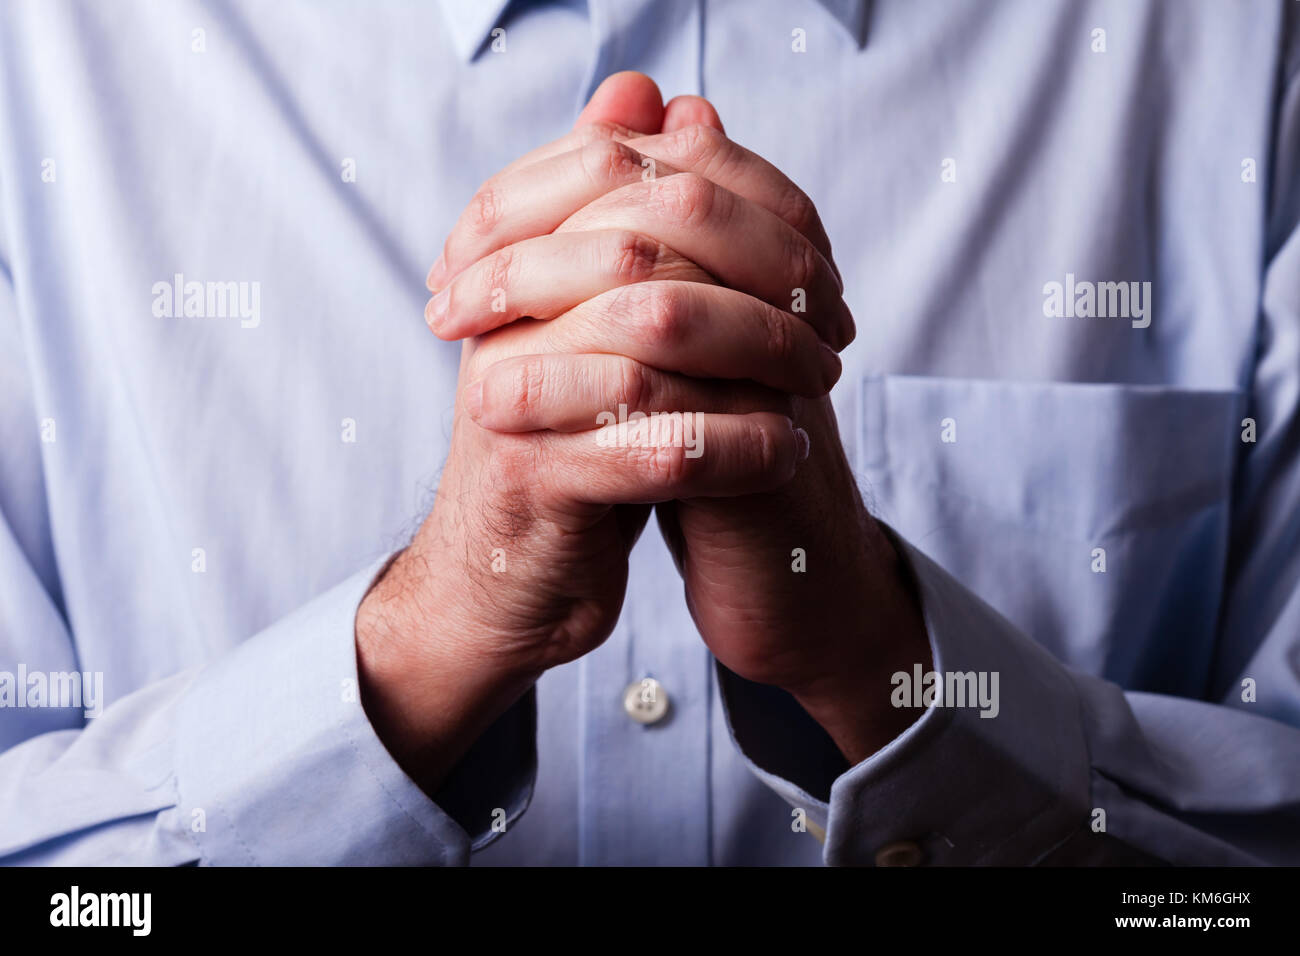 Close up ou libre de mains d'homme mûr fidèles priant mains jointes. les doigts entrecroisés, dans le culte à Dieu. concept pour la religion, la foi, la prière d'un Banque D'Images